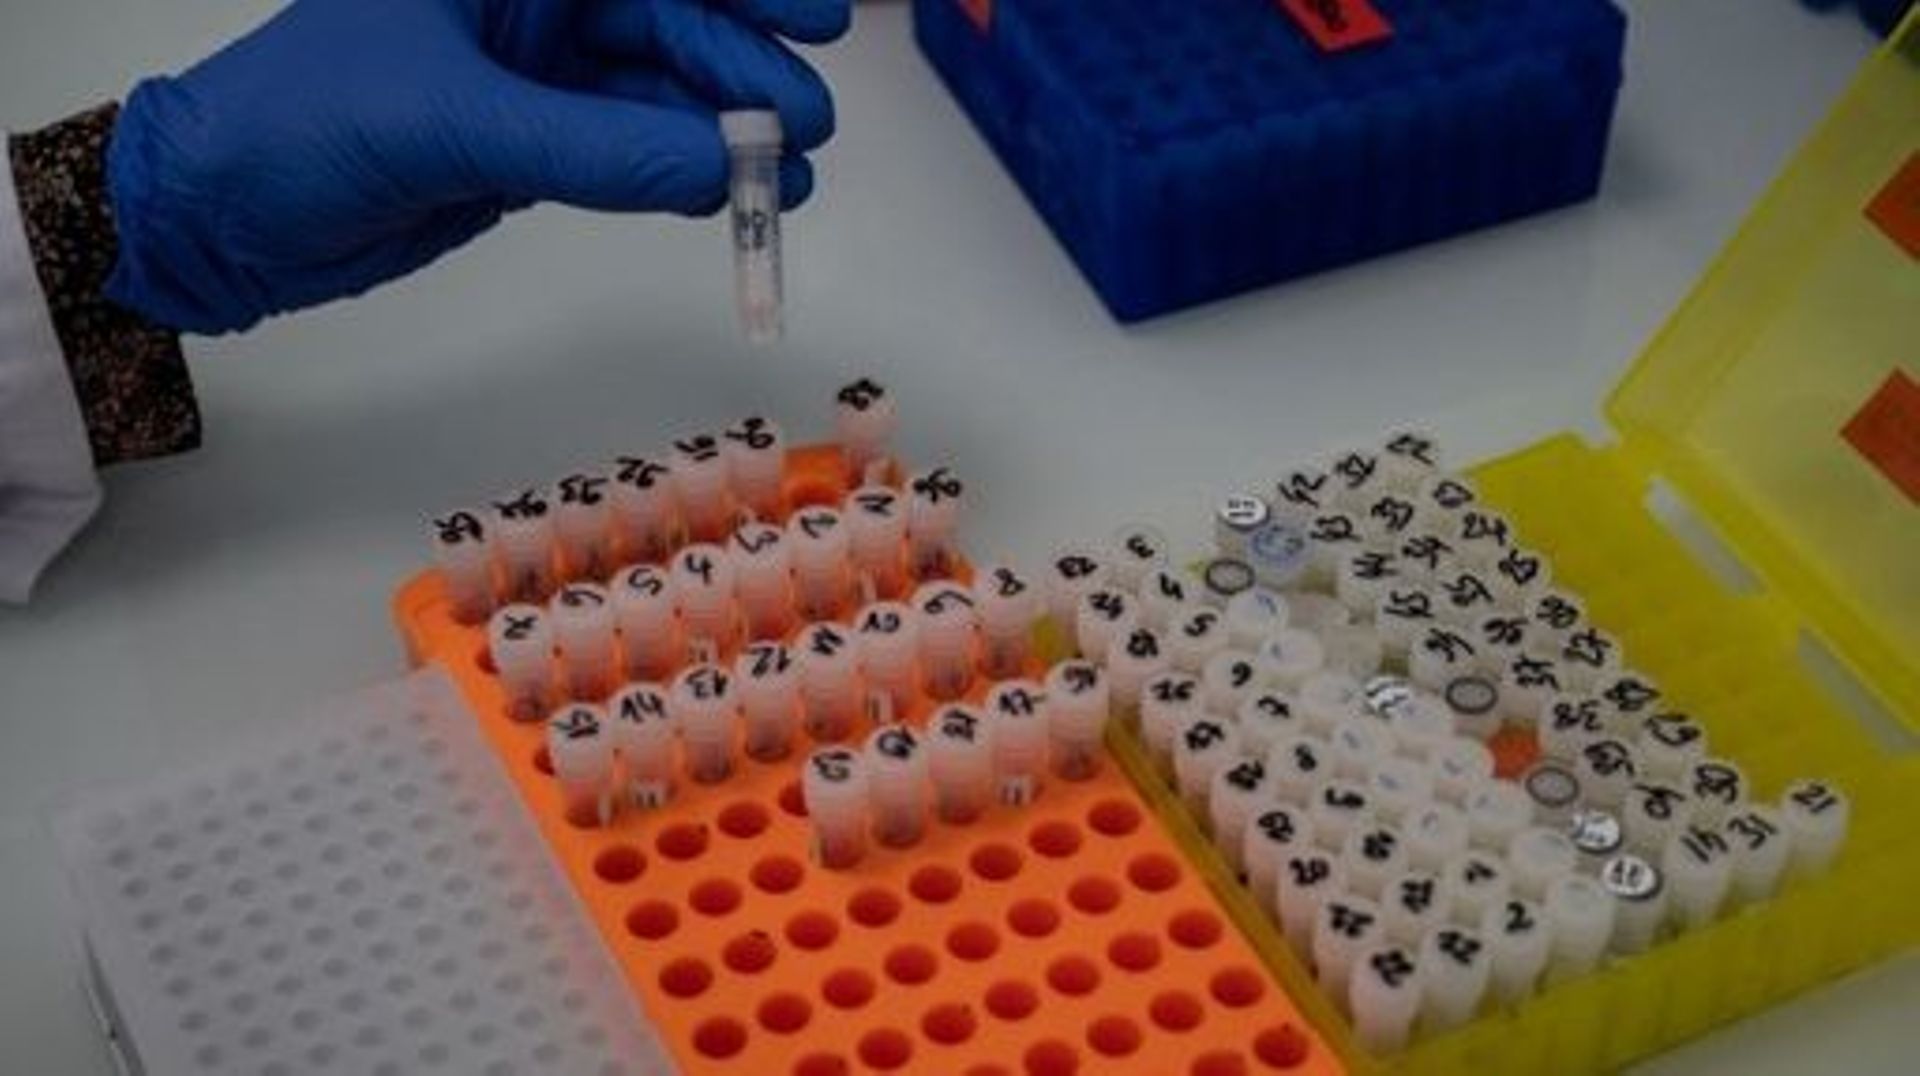 Des chercheurs du laboratoire Auragen préparent le séquençage de génomes humains pour mieux identifier les maladies rares, à Lyon, dans le centre-est de la France, le 23 février 2022. Près de 8000 maladies rares ont été identifiées à ce jour et elles touc